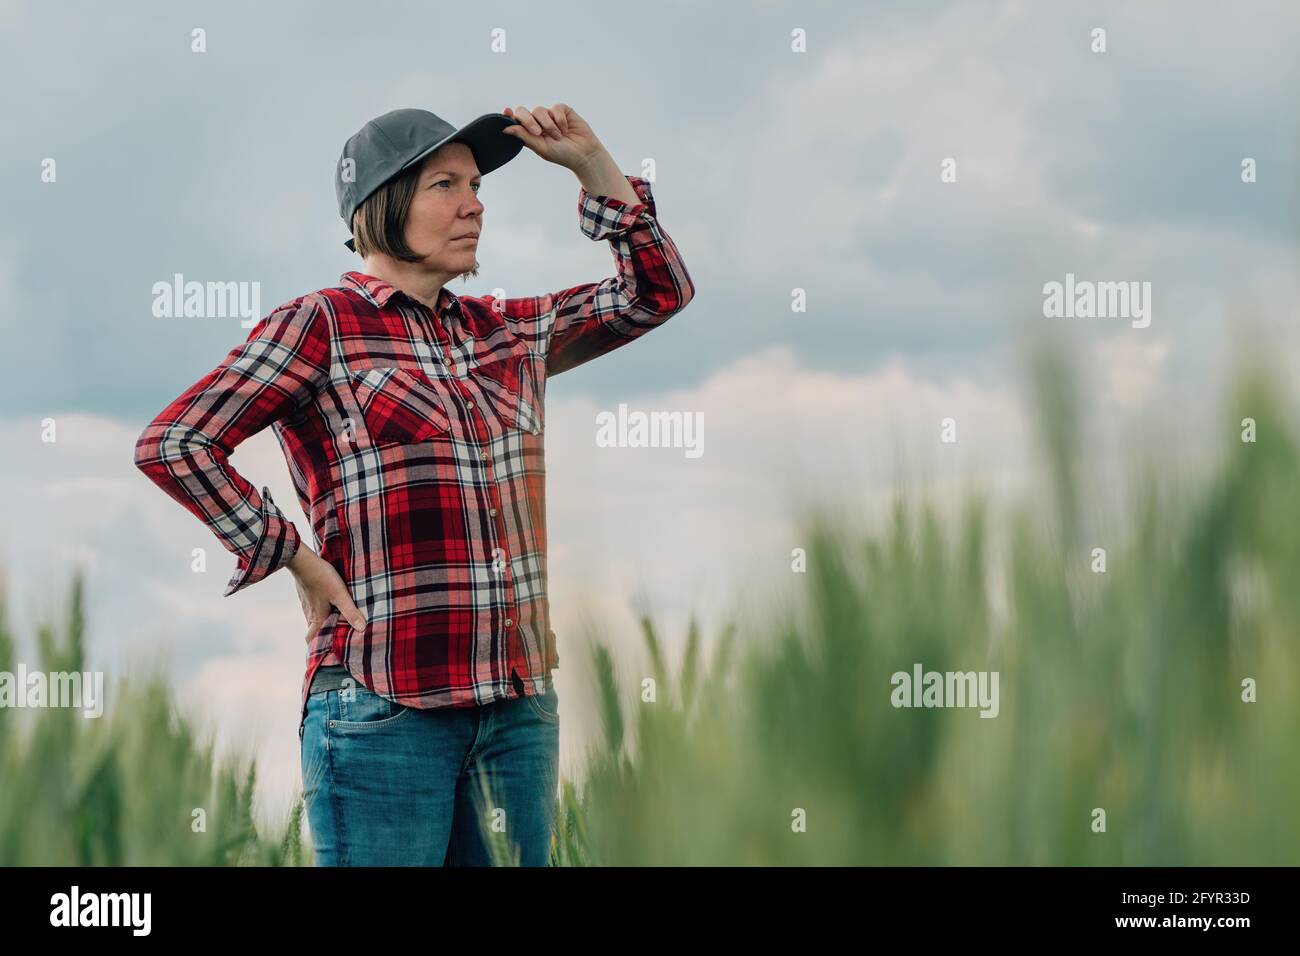 Verantwortungsvolle Weizenbauern Agrarwissenschaftlerin, die ihr kultiviertes Getreideanbau-Agrarfeld ansieht, weibliche Farmarbeiterin posiert auf Ackerland Stockfoto